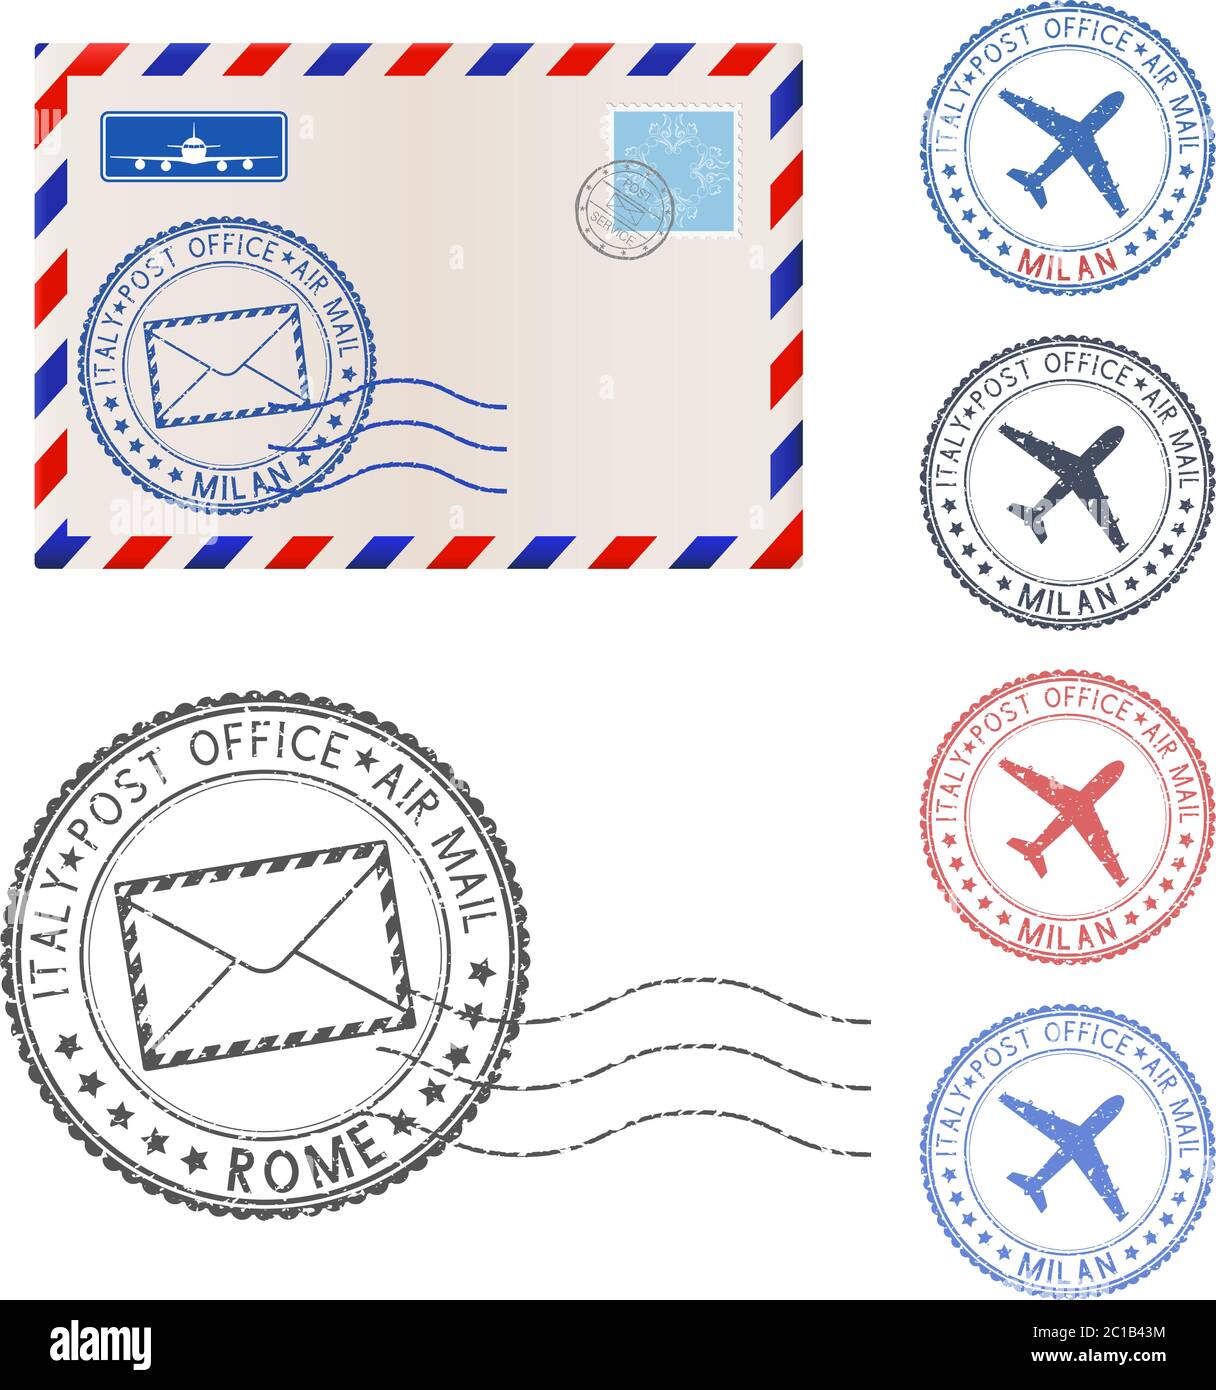 Enveloppe vierge et éléments de marque de poste Illustration de Vecteur